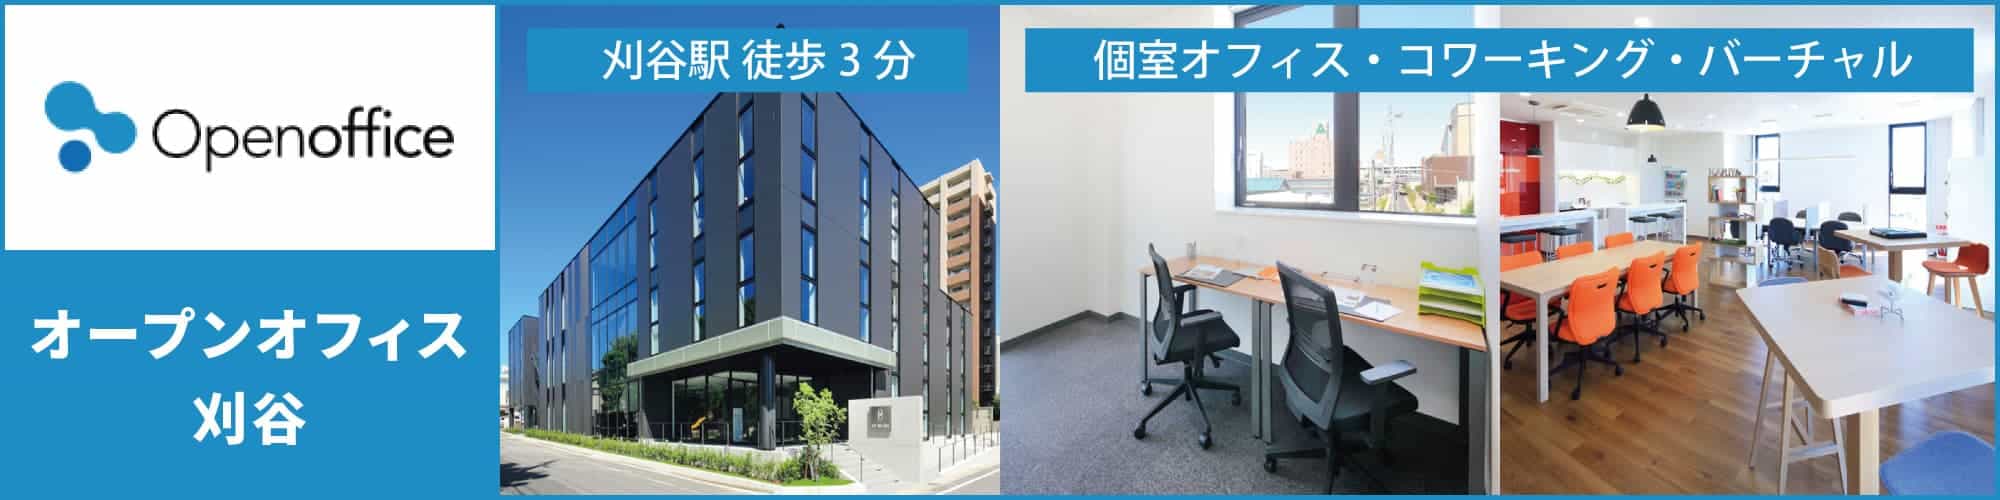 【オープンオフィス刈谷】刈谷駅から徒歩3分のレンタルオフィス・コワーキングスペース